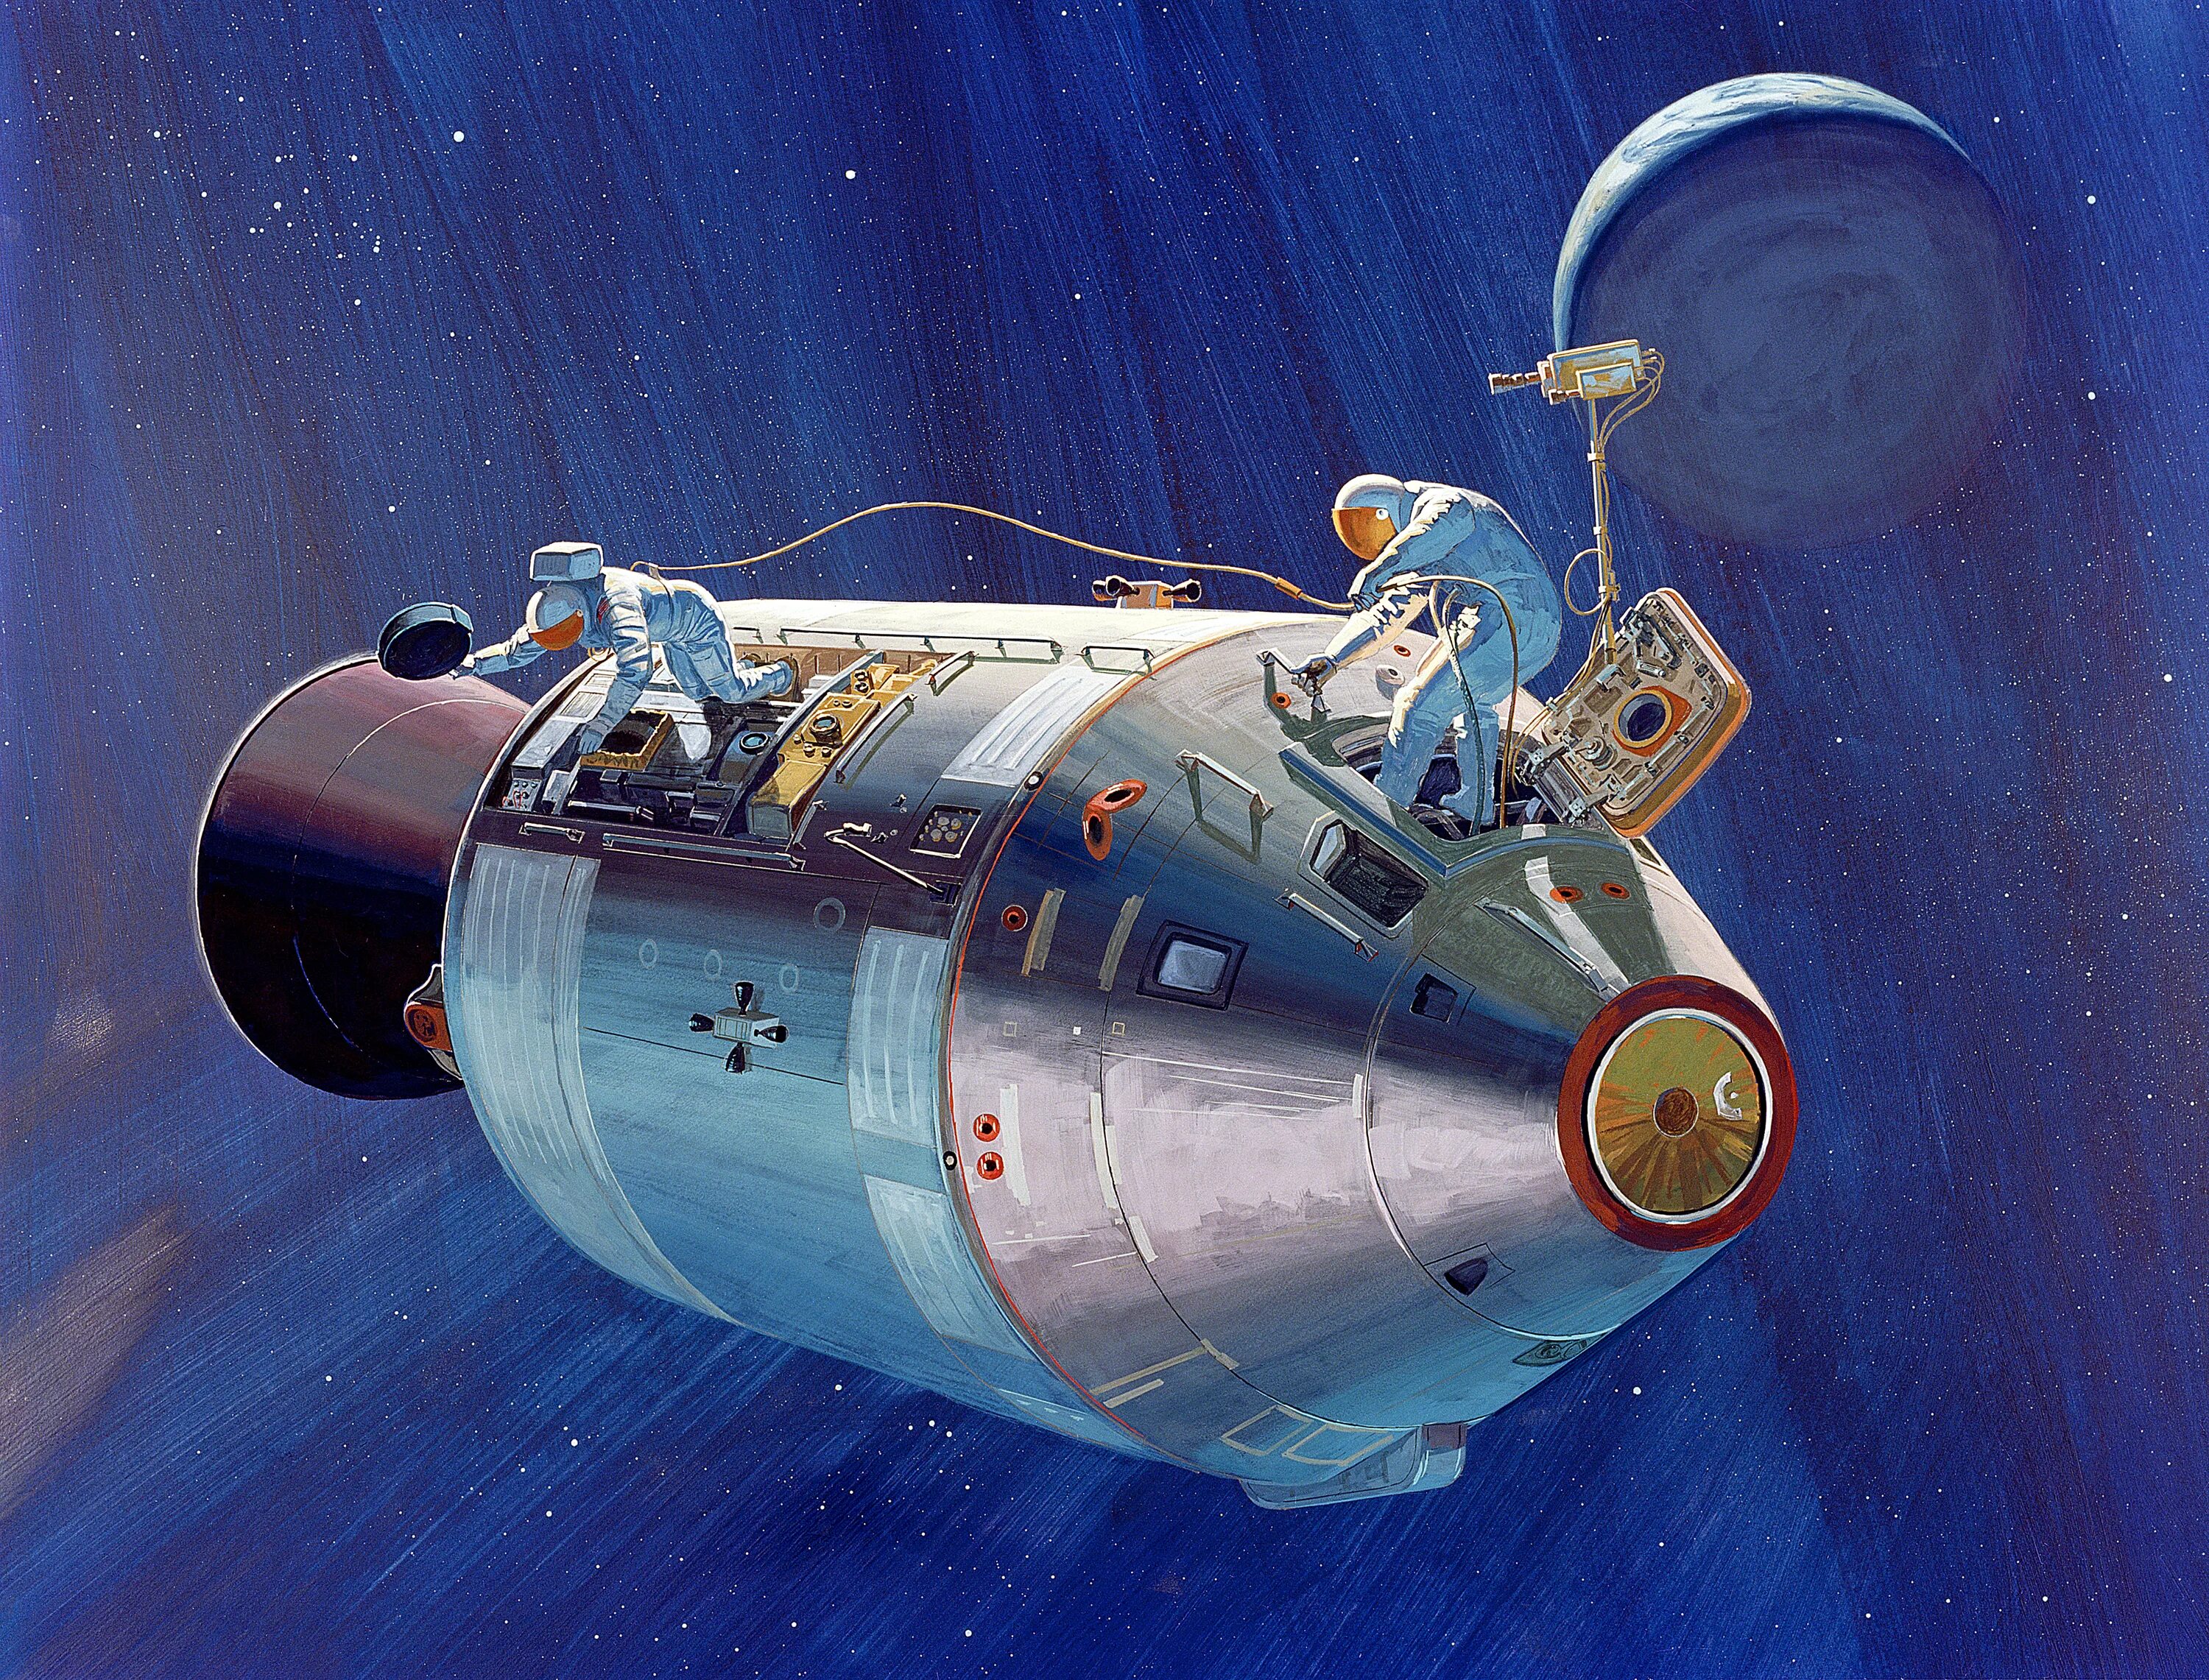 Аполлон 13 космический корабль. Космический корабль Аполлон 15. Космический корабль Аполлон 11. Лунный модуль Аполлон 15.